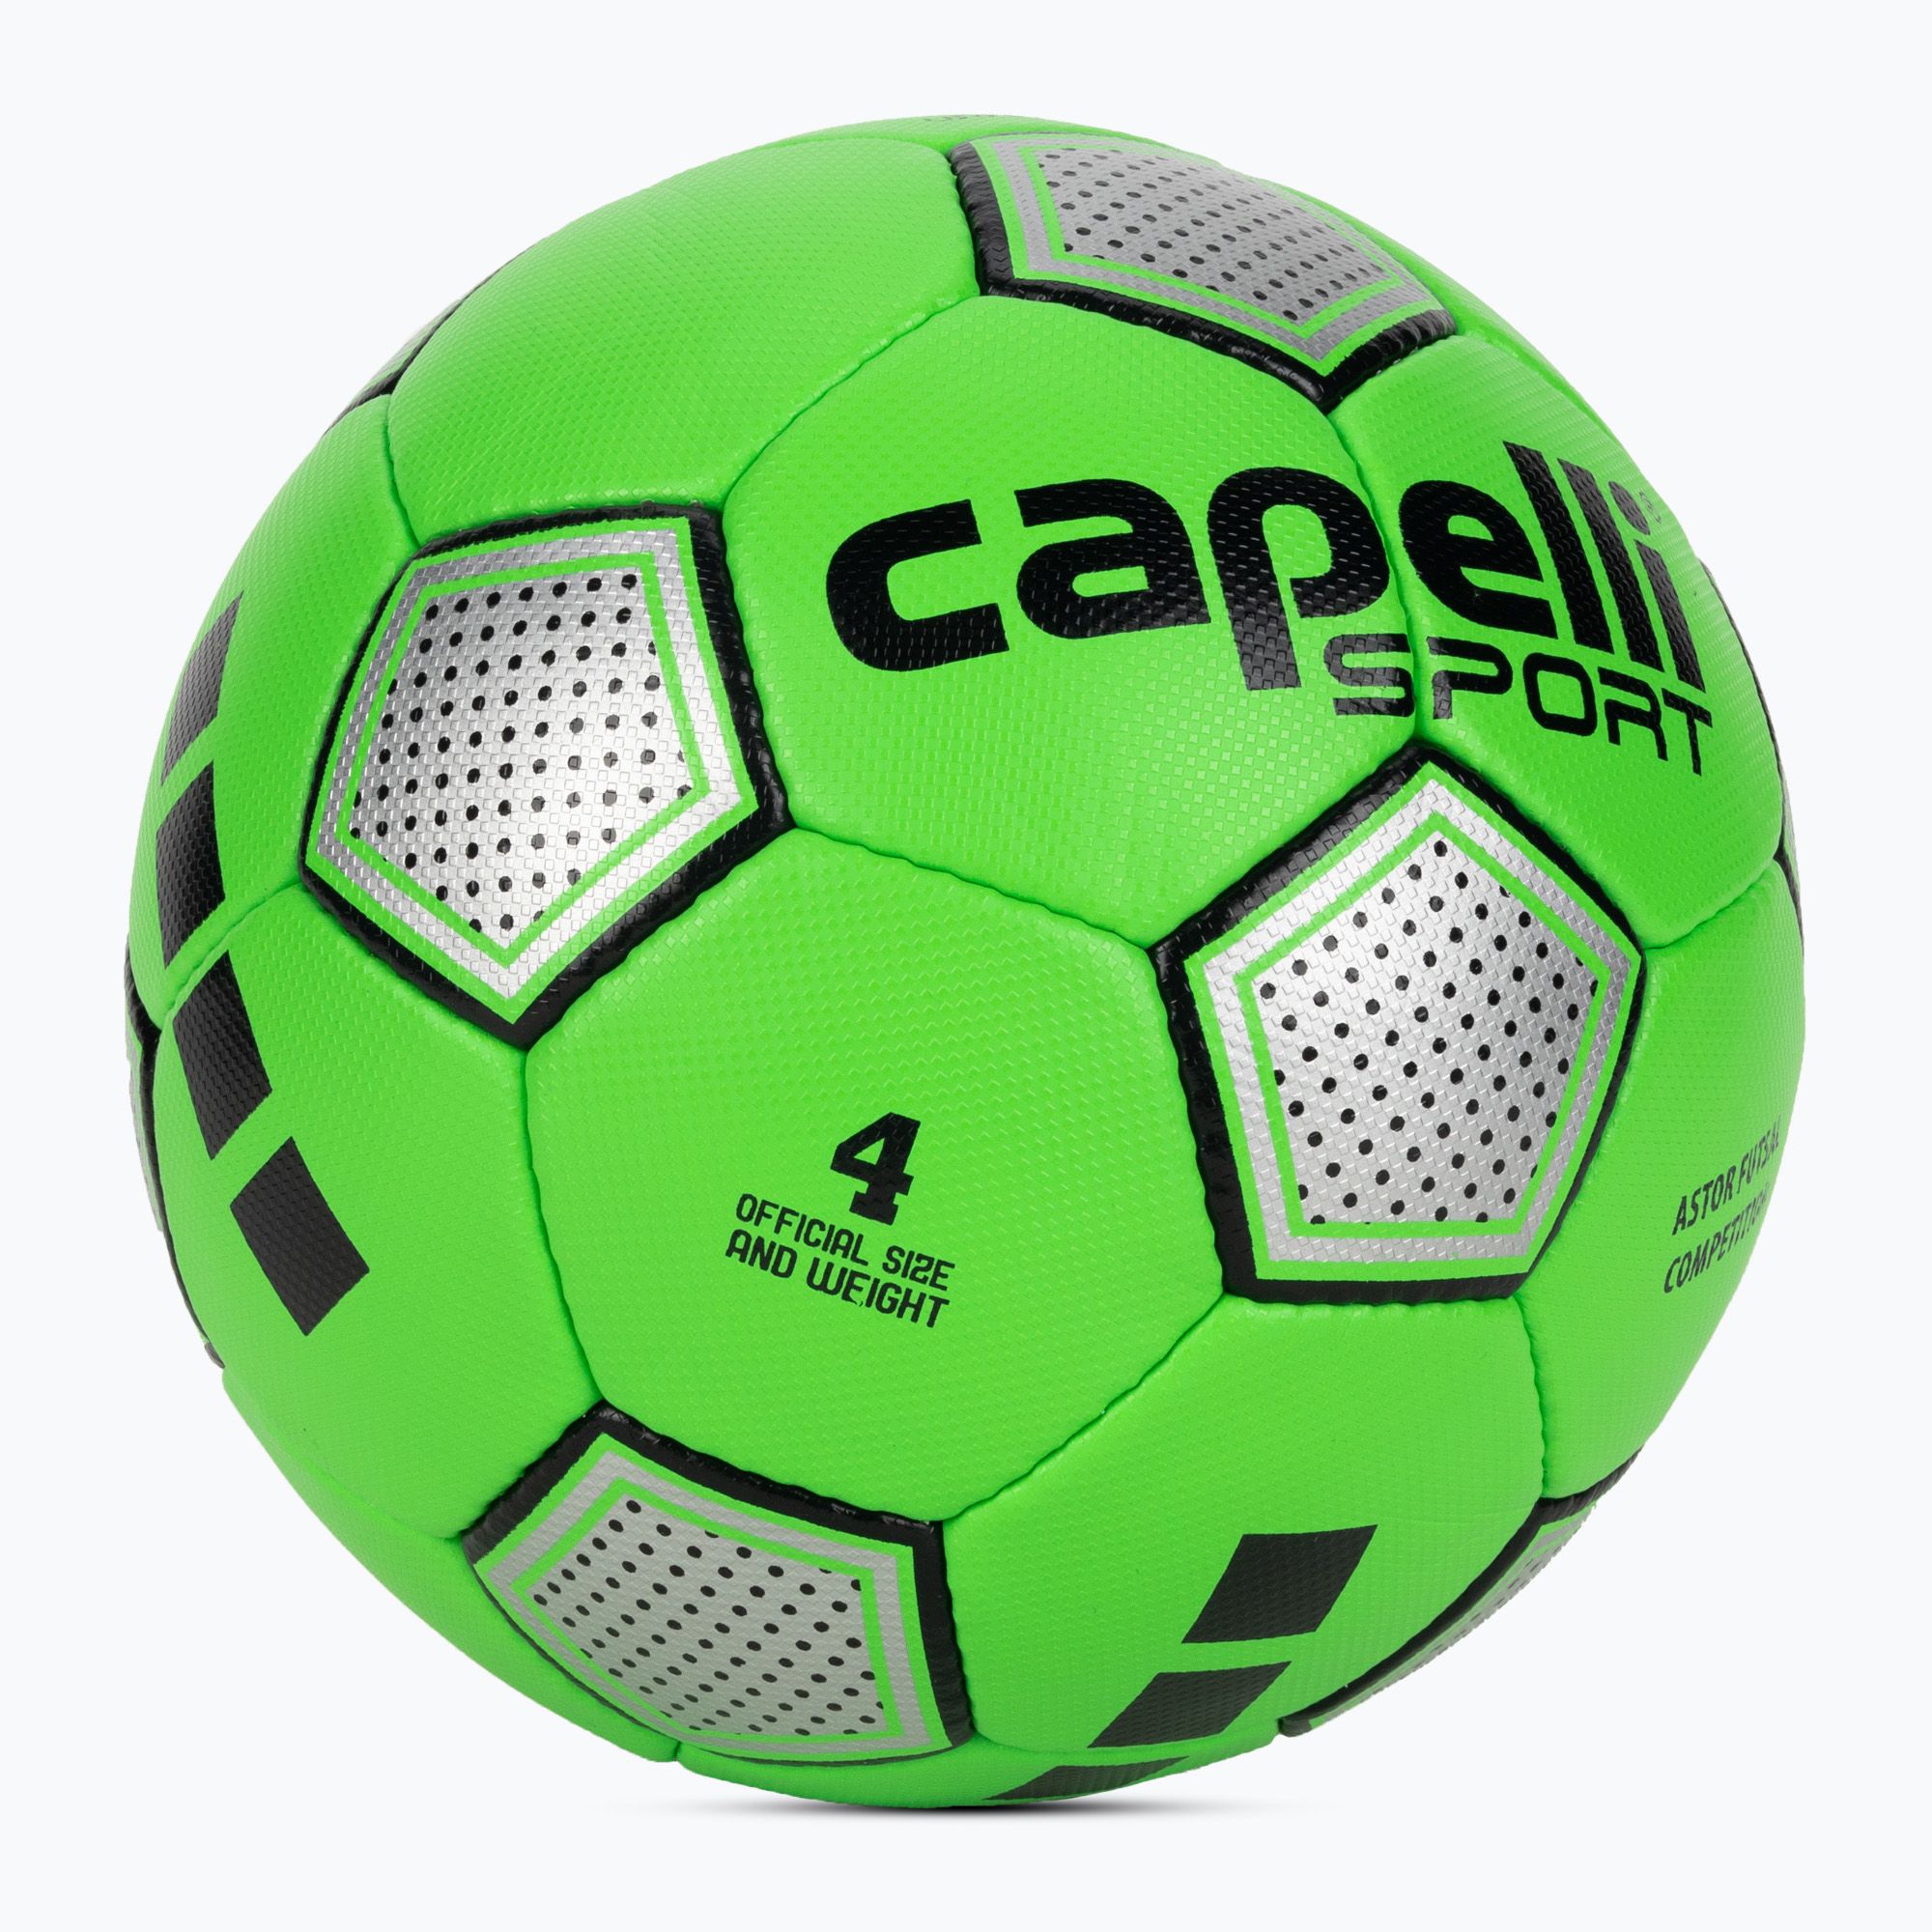 Piłka do piłki nożnej Capelli Astor Futsal Competition AGE-1212 rozmiar 4 zdjęcie nr 2